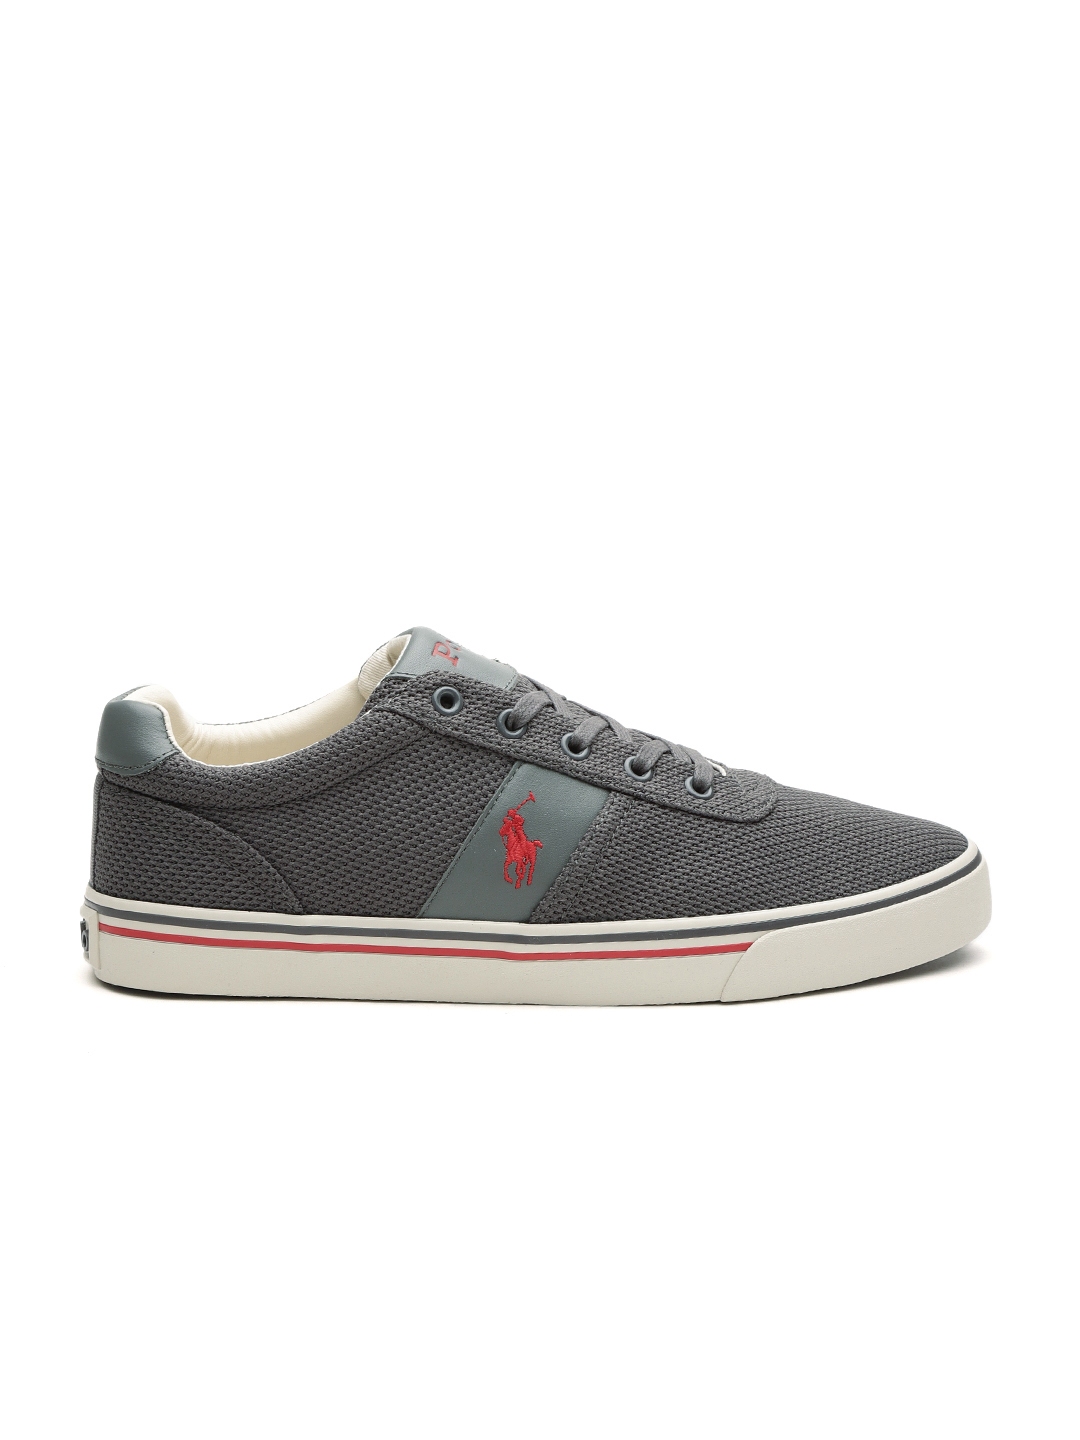 Buy Polo Ralph Lauren Men Grey Solid Sneakers - Casual Shoes for Men ...